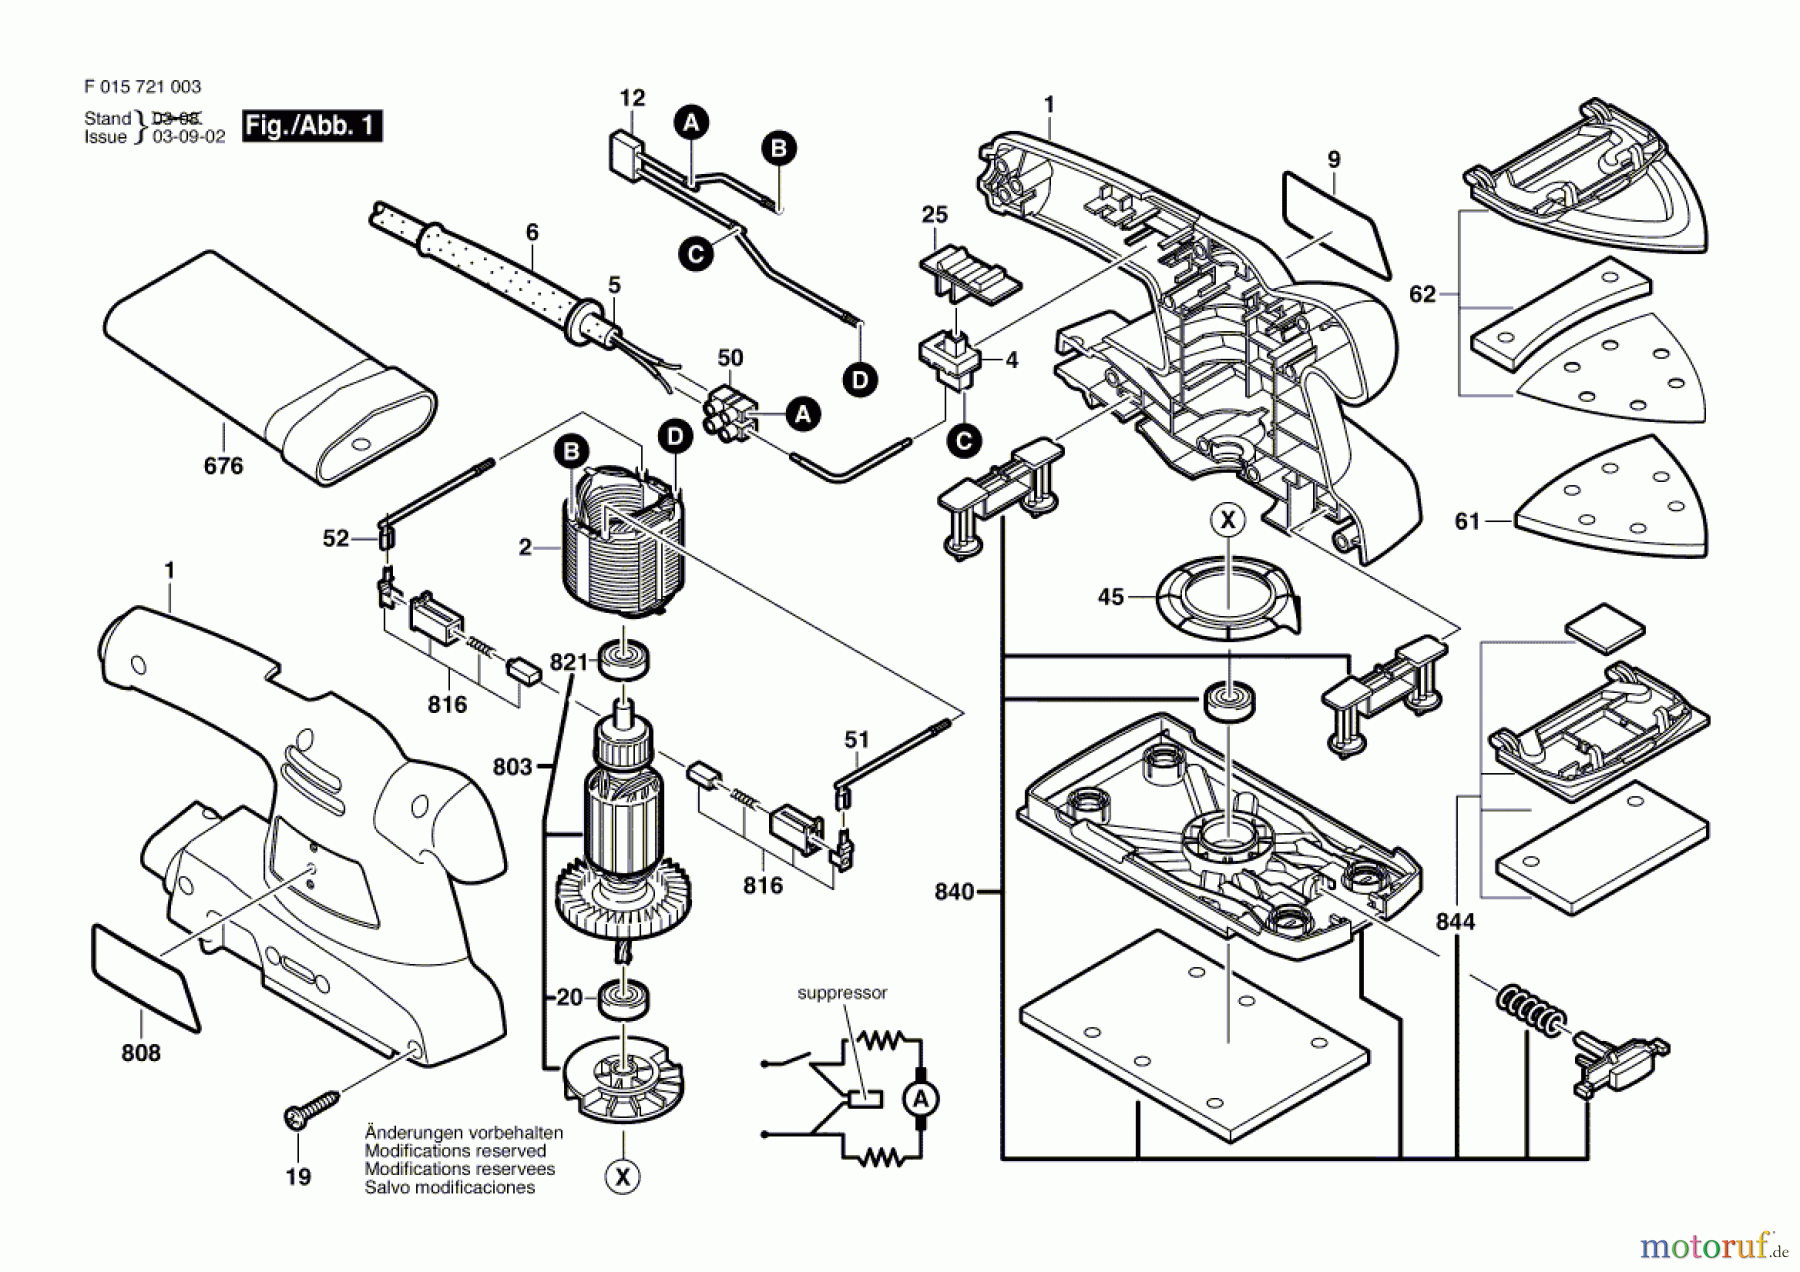  Bosch Werkzeug Schwingschleifer 7210 Seite 1